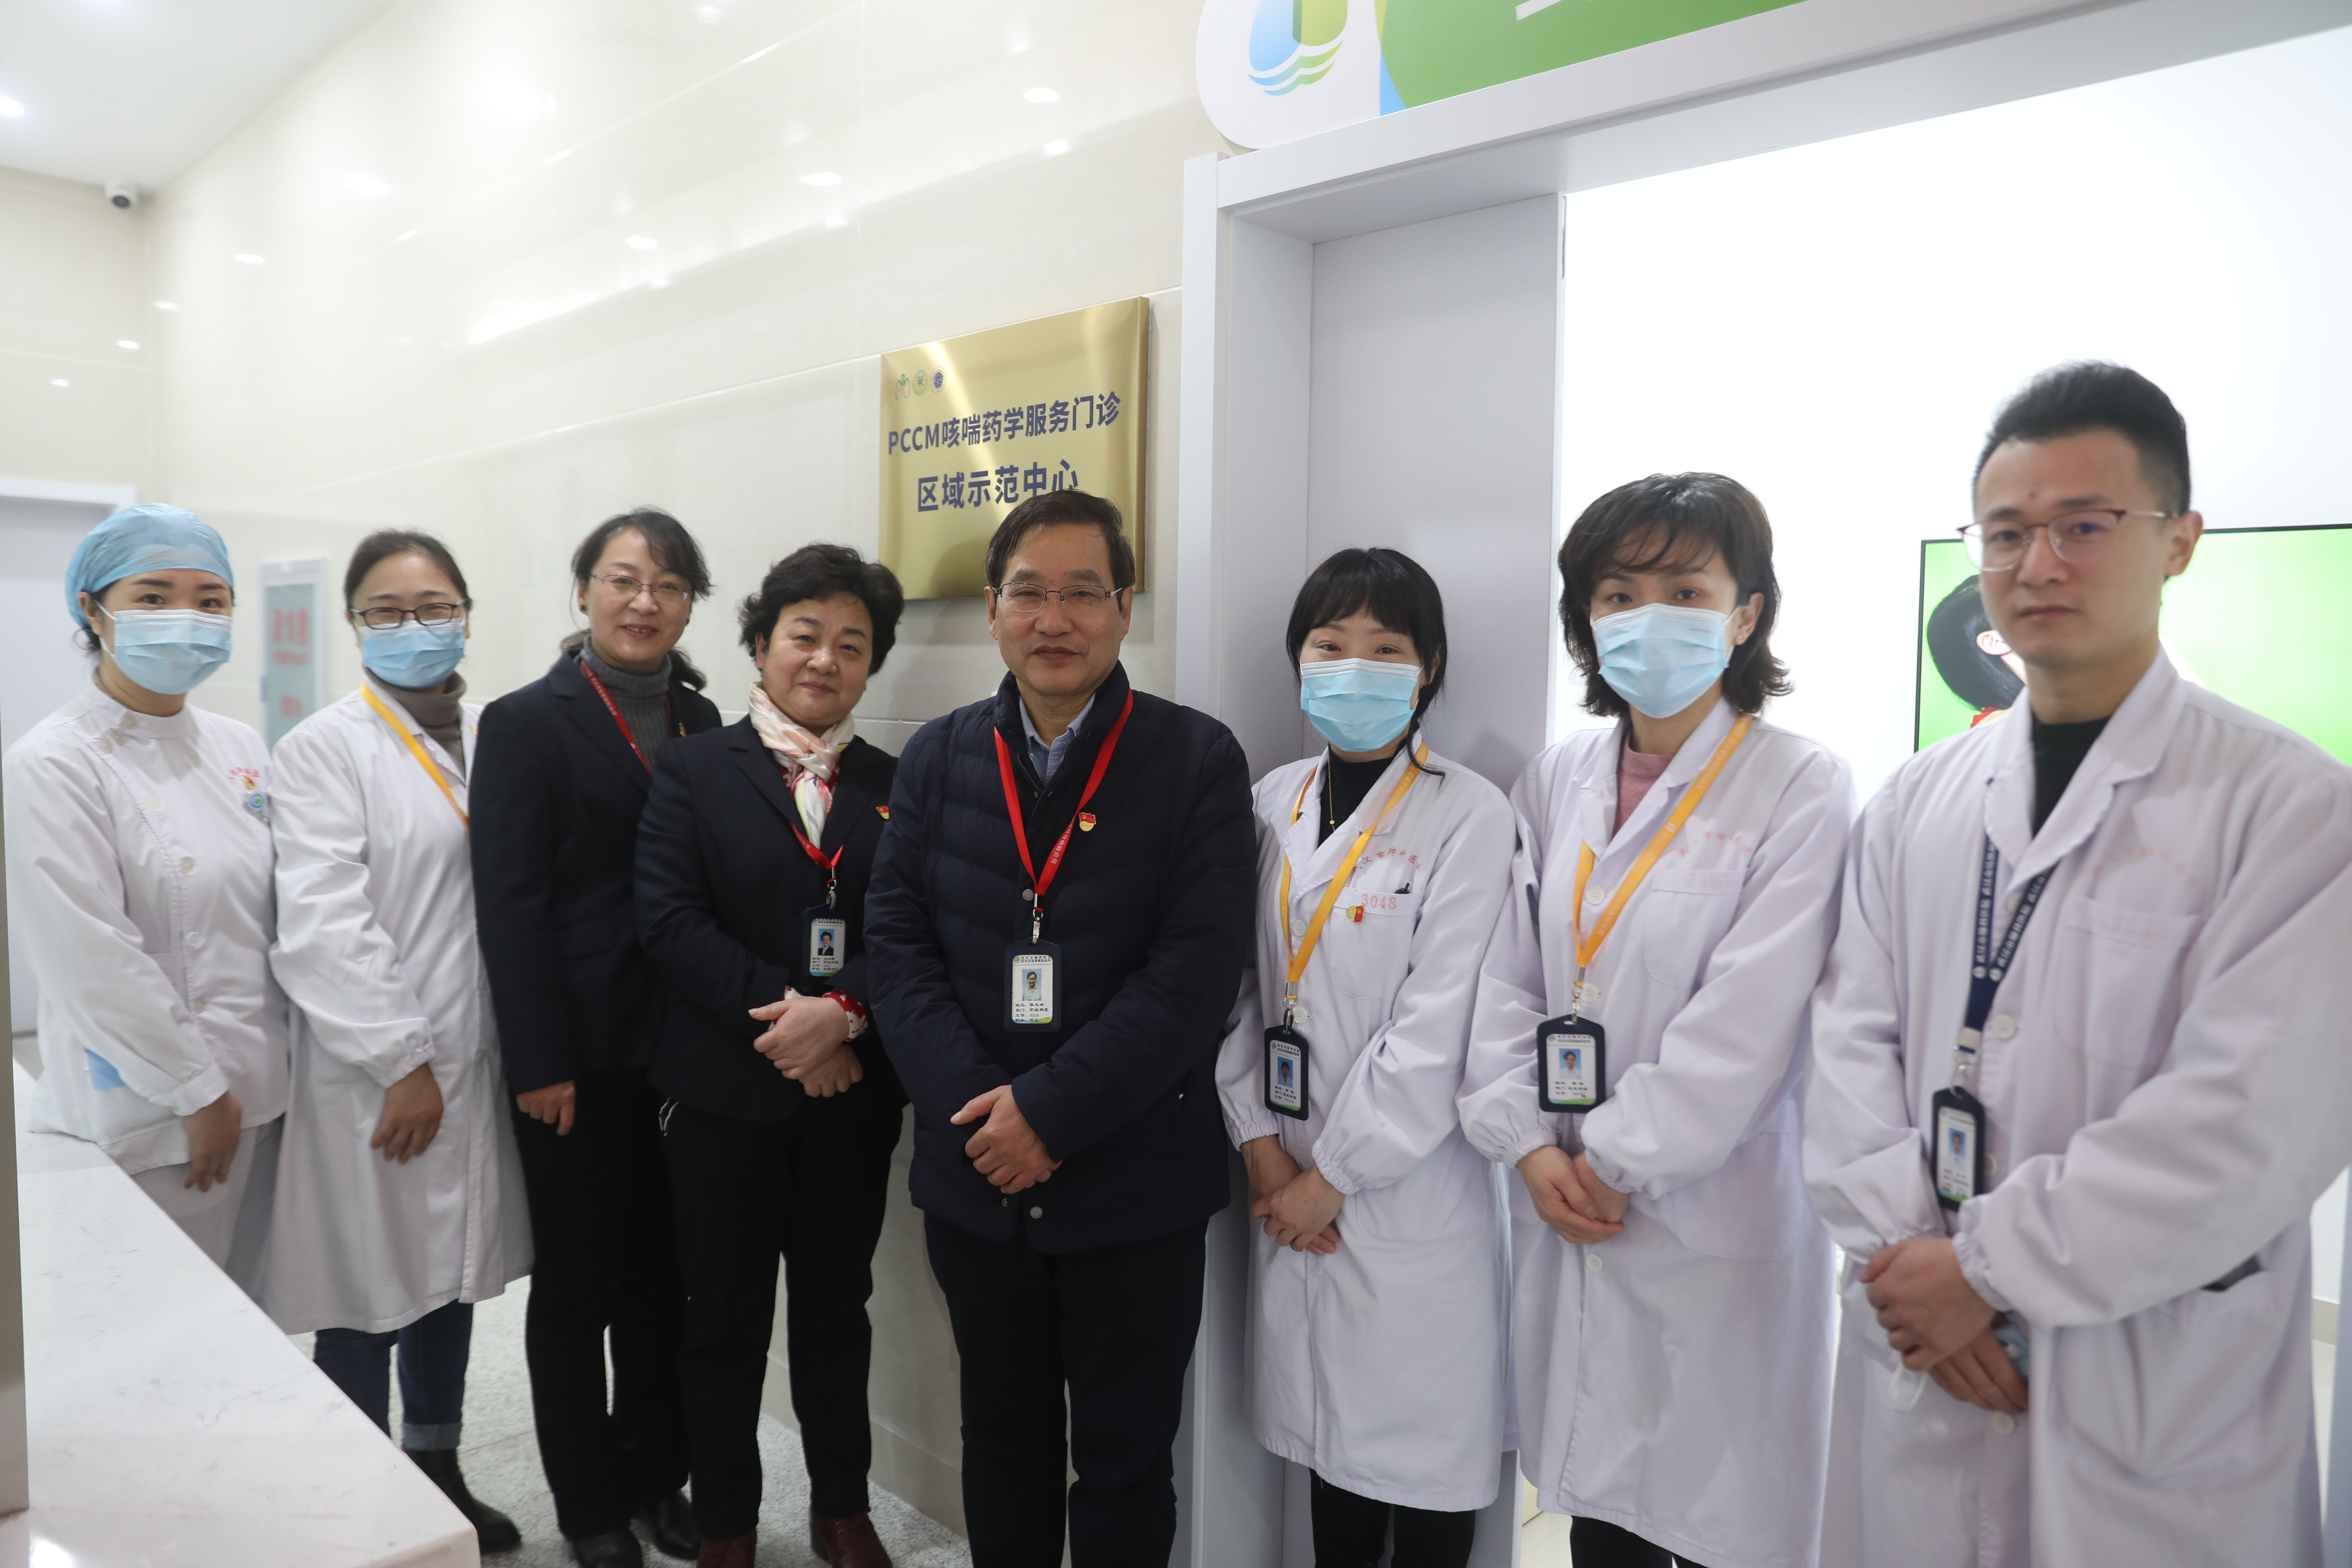 武汉市肺科医院|让患者把药用好、用对！武汉市肺科医院成立湖北省首个获国家批准的“PCCM咳喘药学服务门诊区域示范中心”